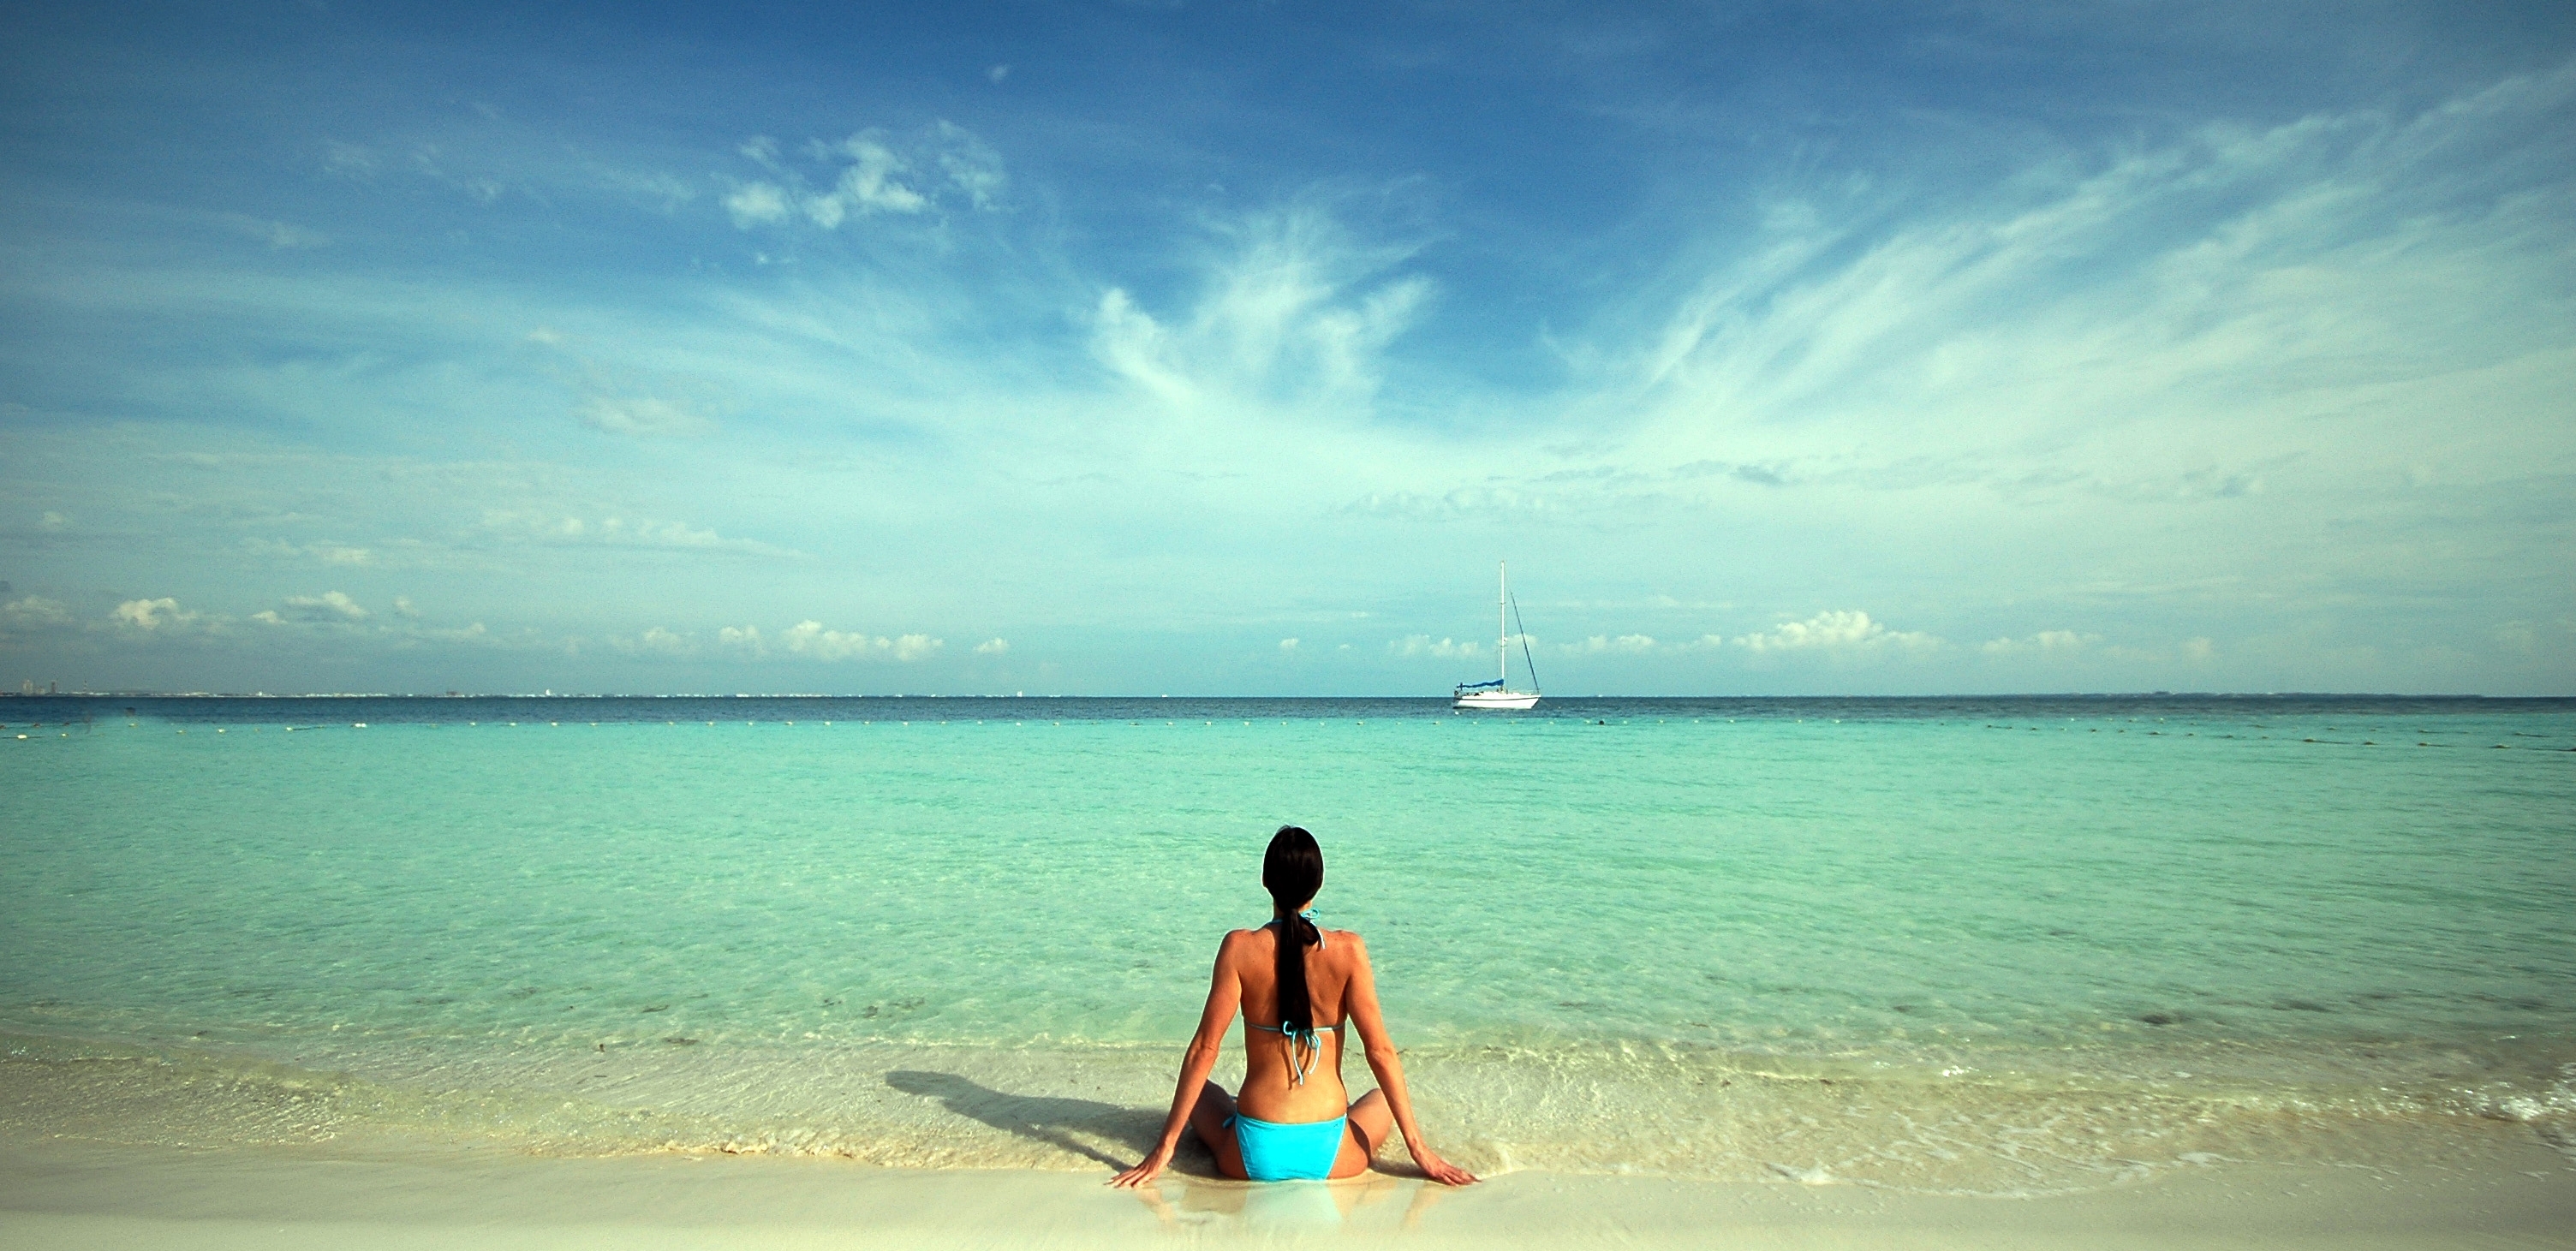  Riesgo de padecer cáncer de piel es mayor en lugares como Cancún